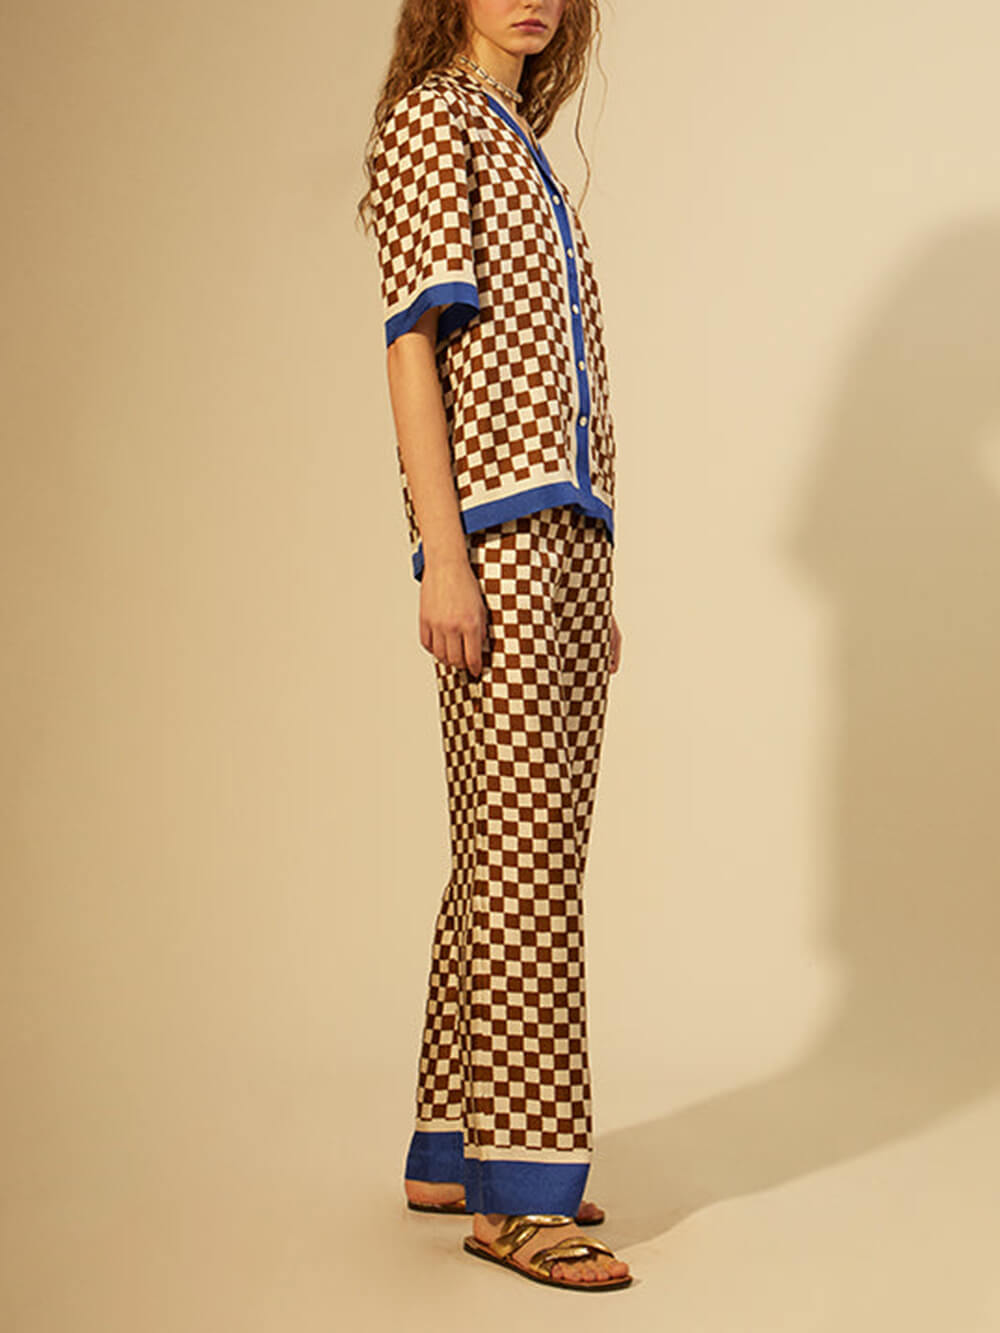 Einzigartige, lockere, elastische Hose mit Schachbrettmuster und blauen Streifen